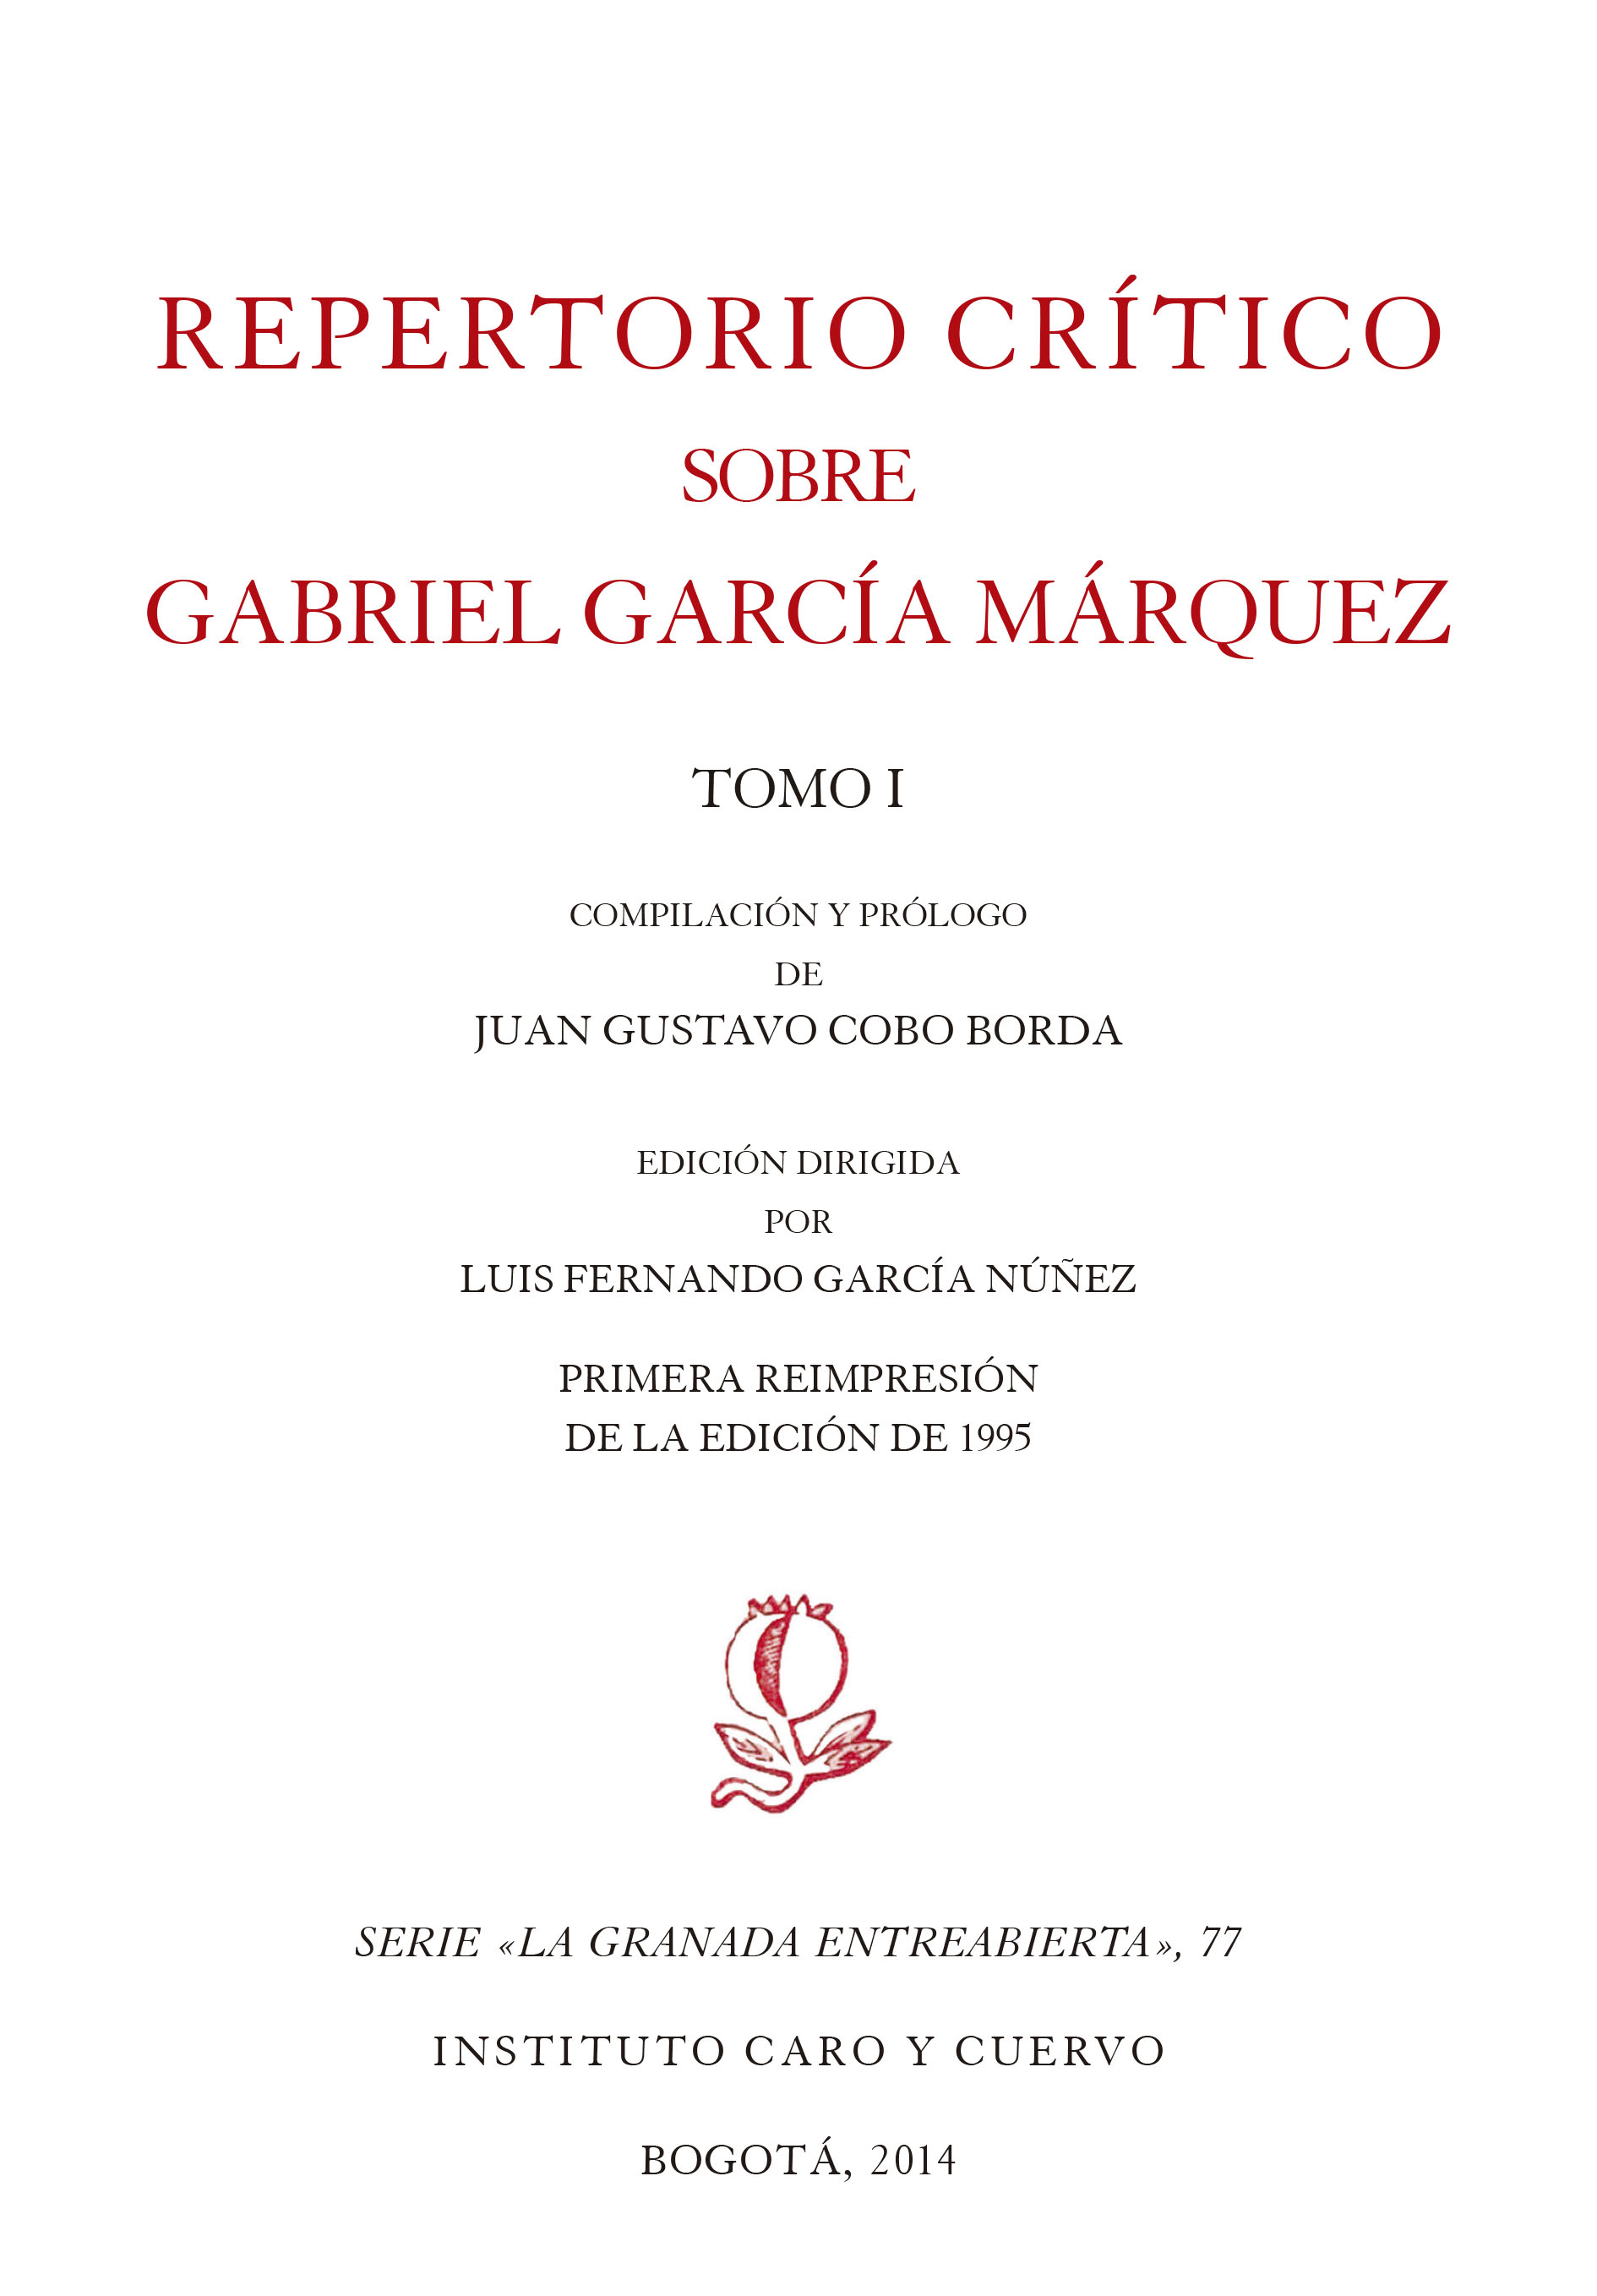 Repertorio crítico sobre Gabriel García Márquez, tomos I y II